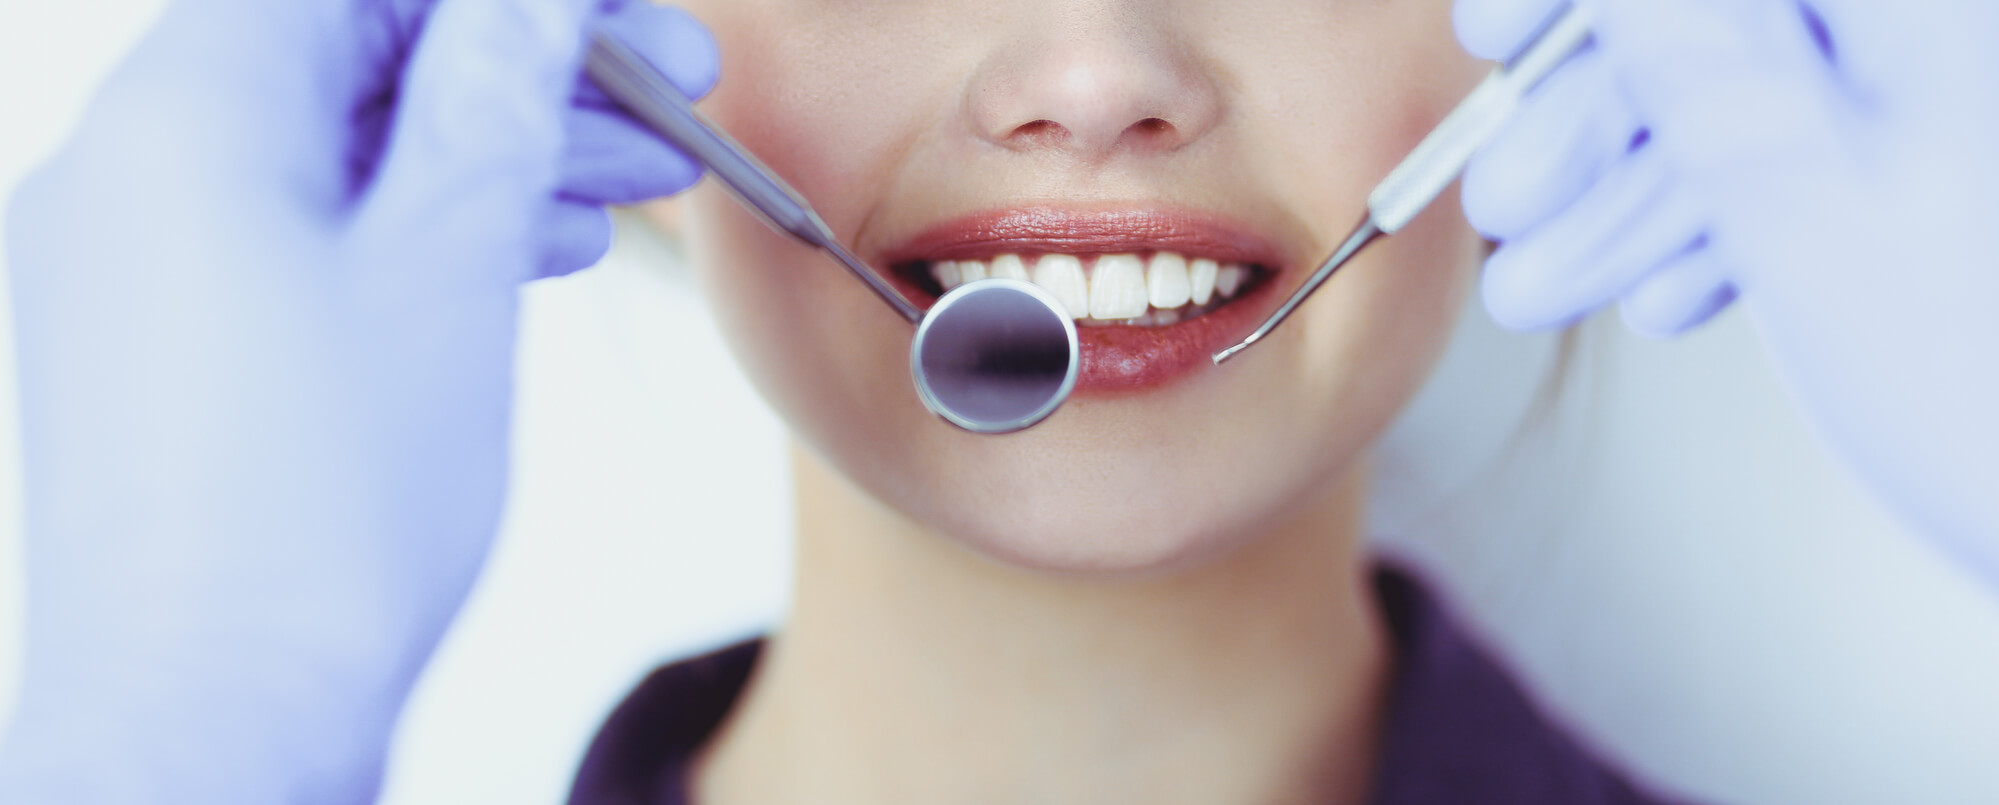 How Often Should You Get Dental Checkups? 